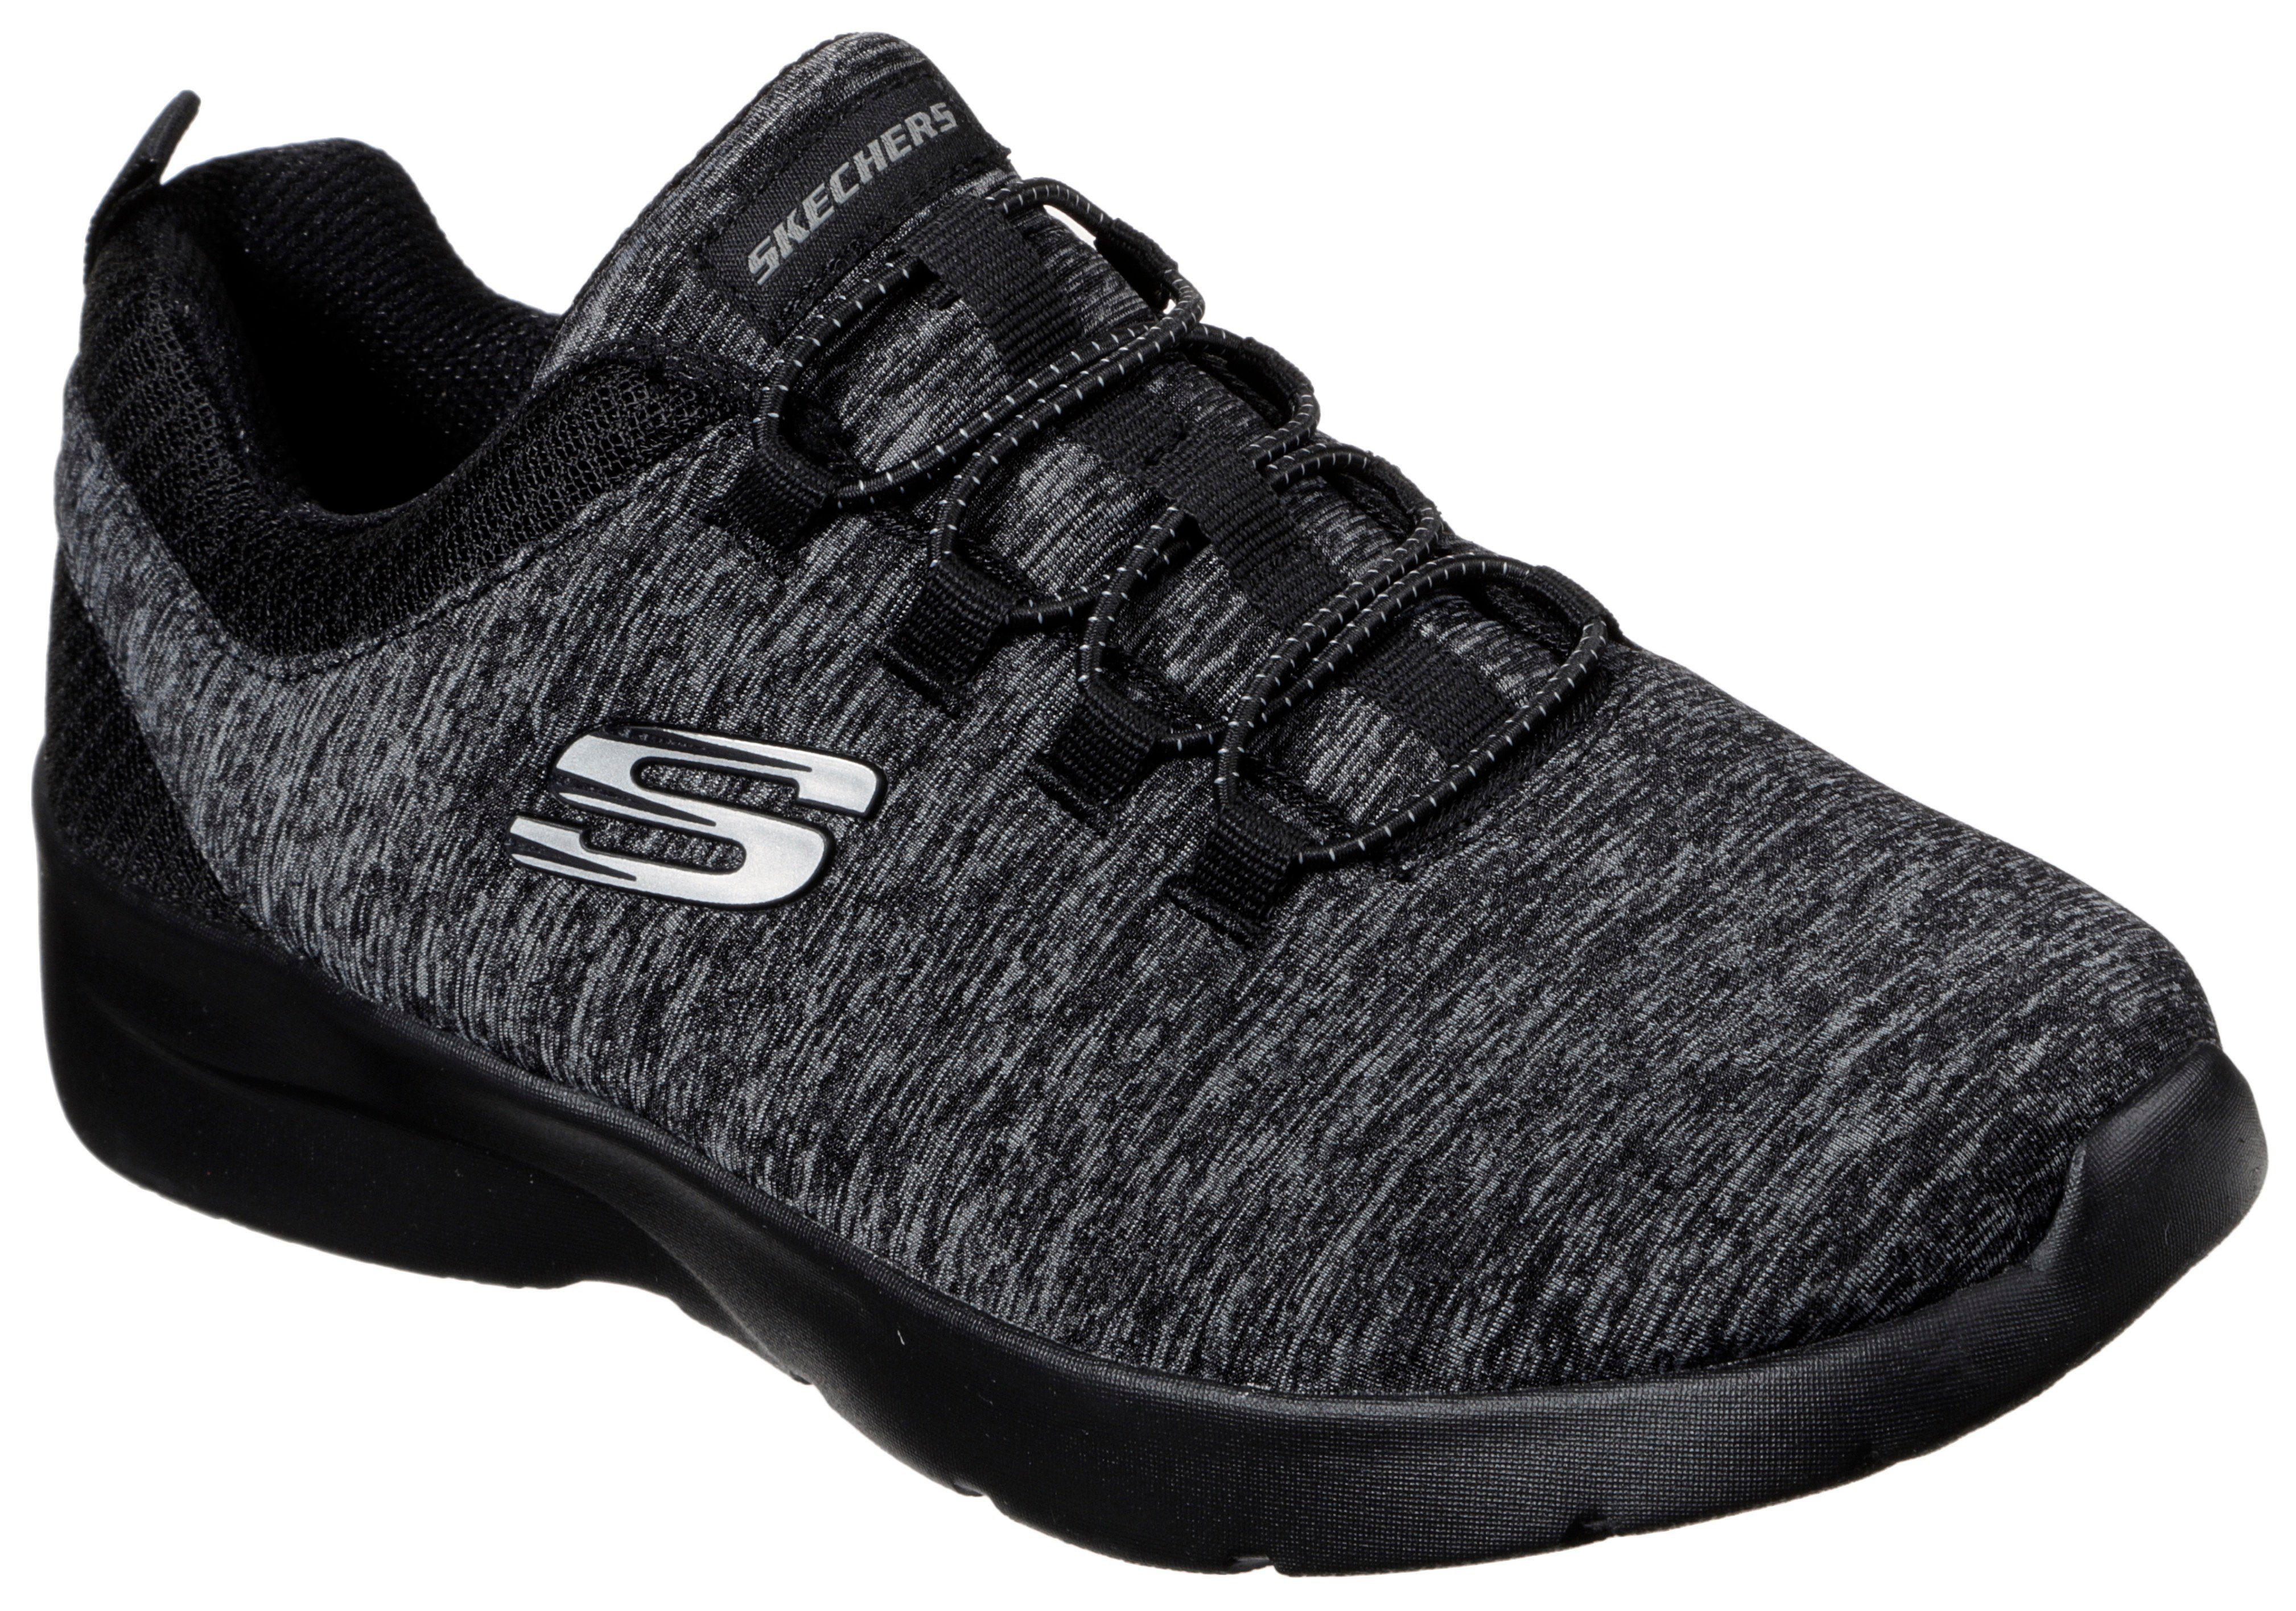 Skechers DYNAMIGHT 2.0-IN A für FLASH Slip-On geeignet Maschinenwäsche Sneaker schwarz-meliert